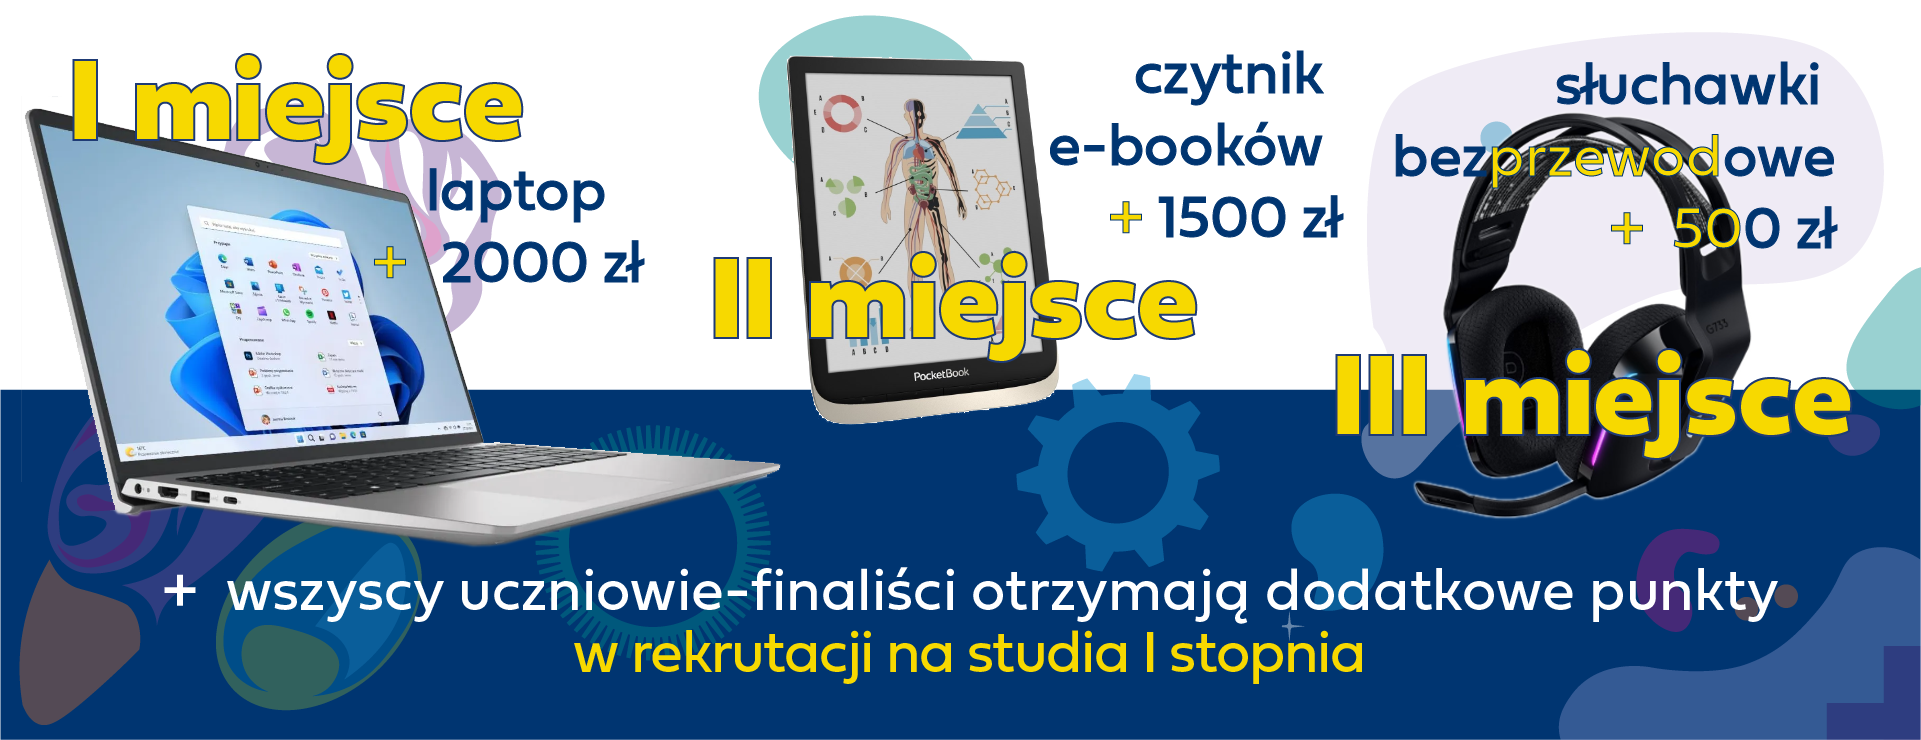 nagrody w konkursie laptop+2000 zł, tablet + 1500 zł, czytnik e-booków + 500 zł oraz dodatkowe punkty rekrutacyjne